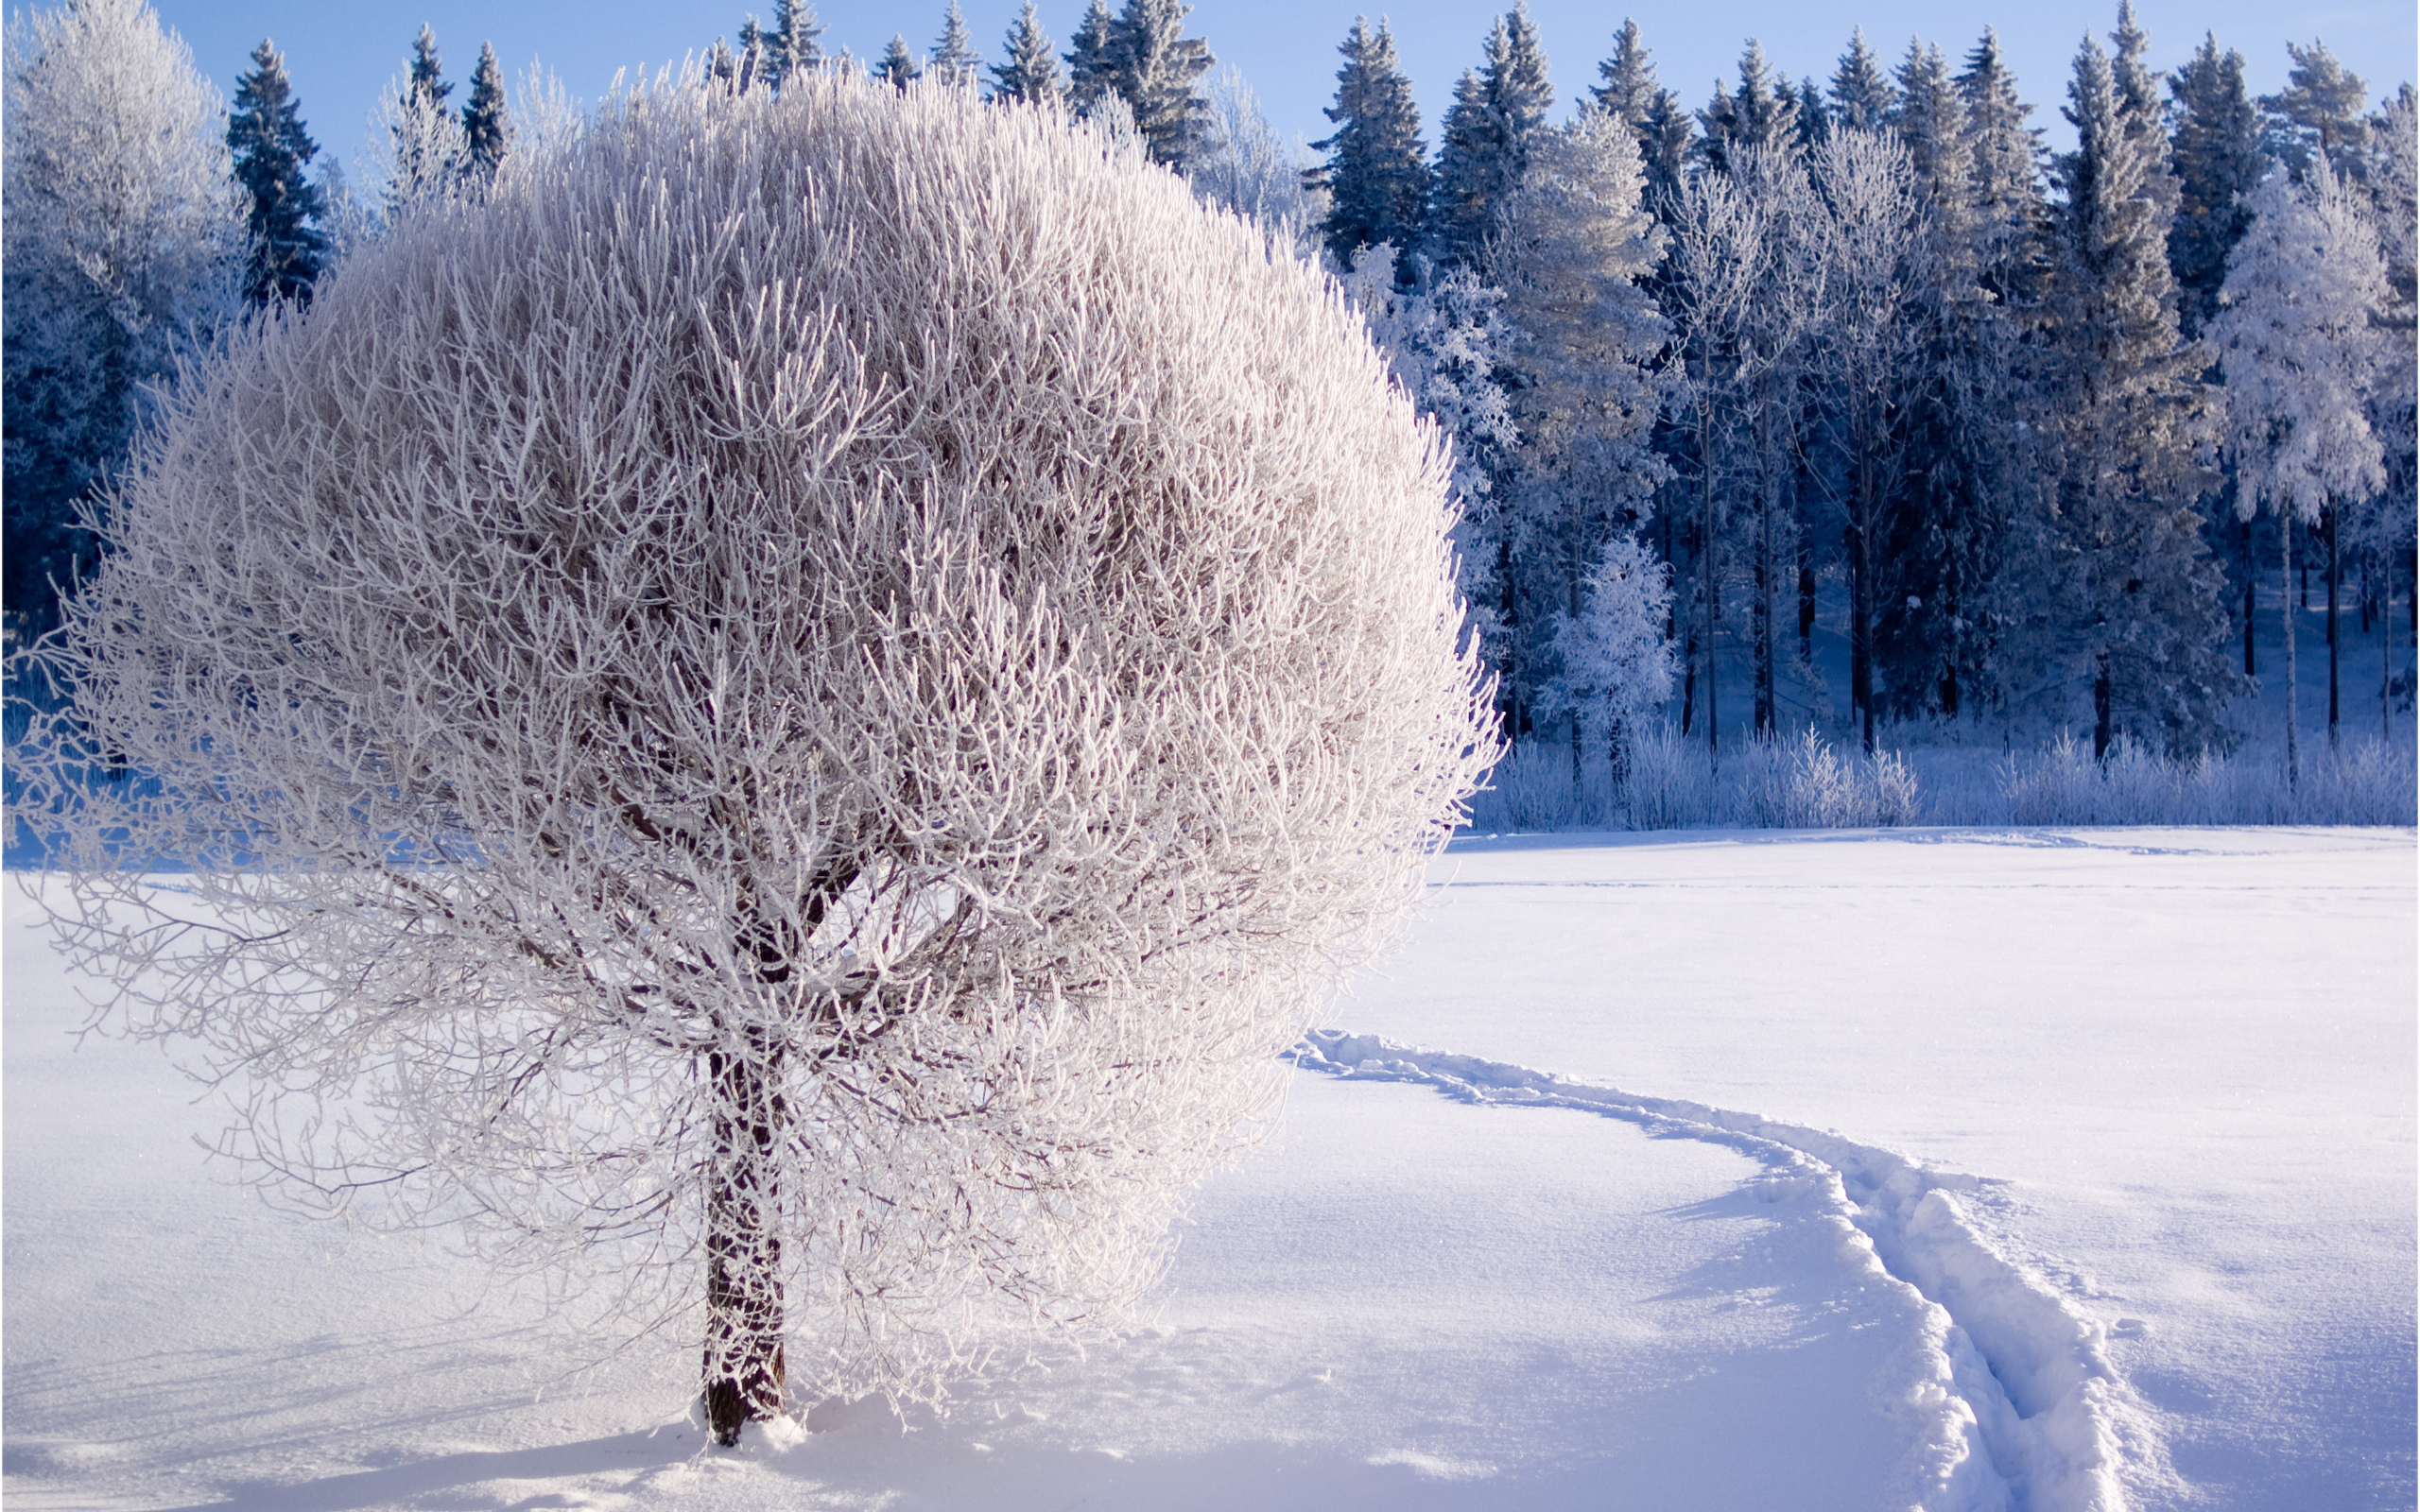 والپیپر فصل زمستان پر از برف با طبیعت زیبا و سفید پوش 